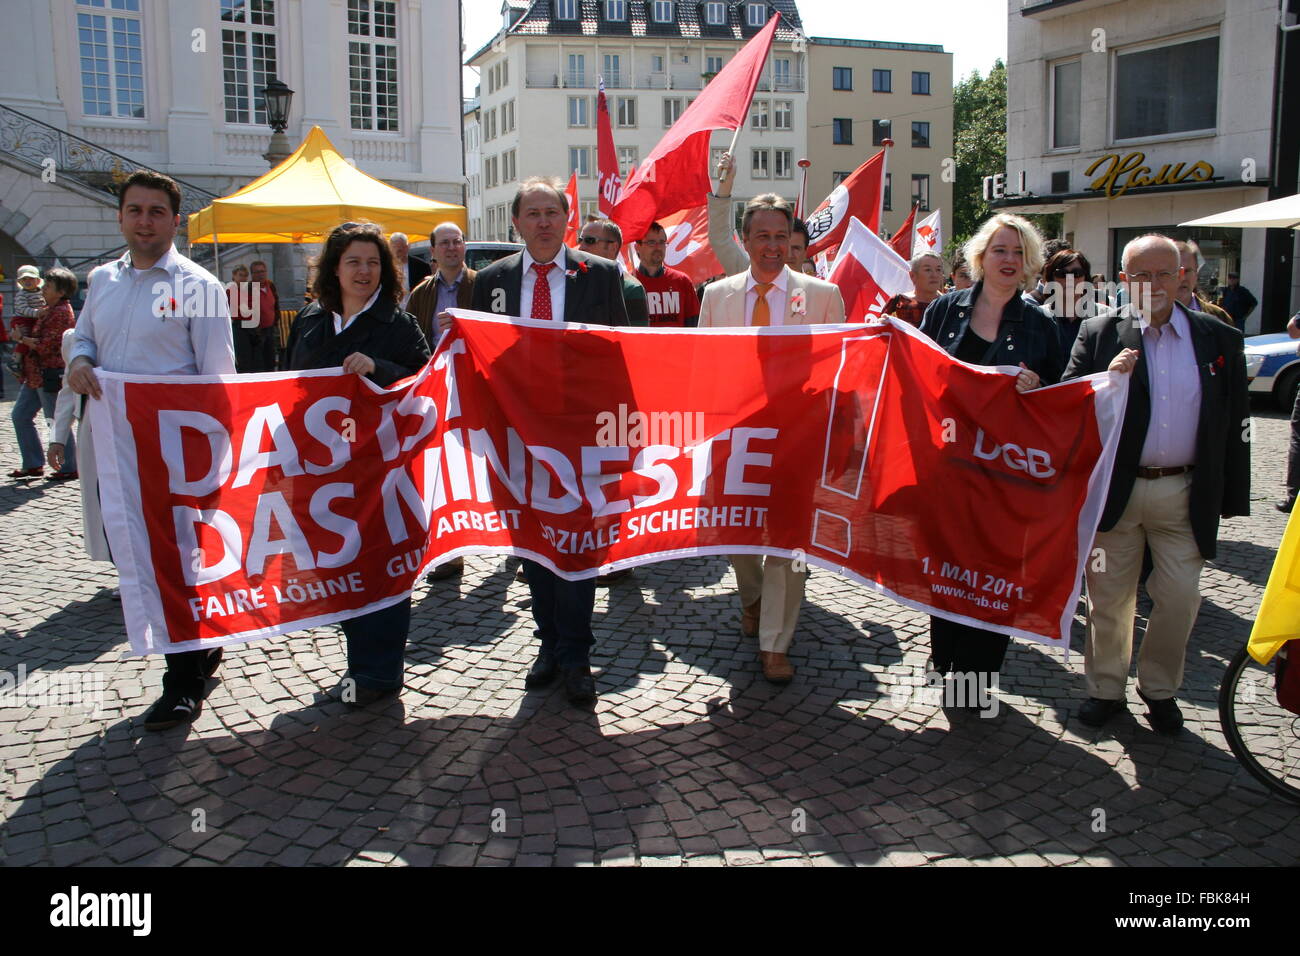 Manifestation syndicale au premier mai pour plus de paiement, Bonn, Allemagne, place du marché Banque D'Images